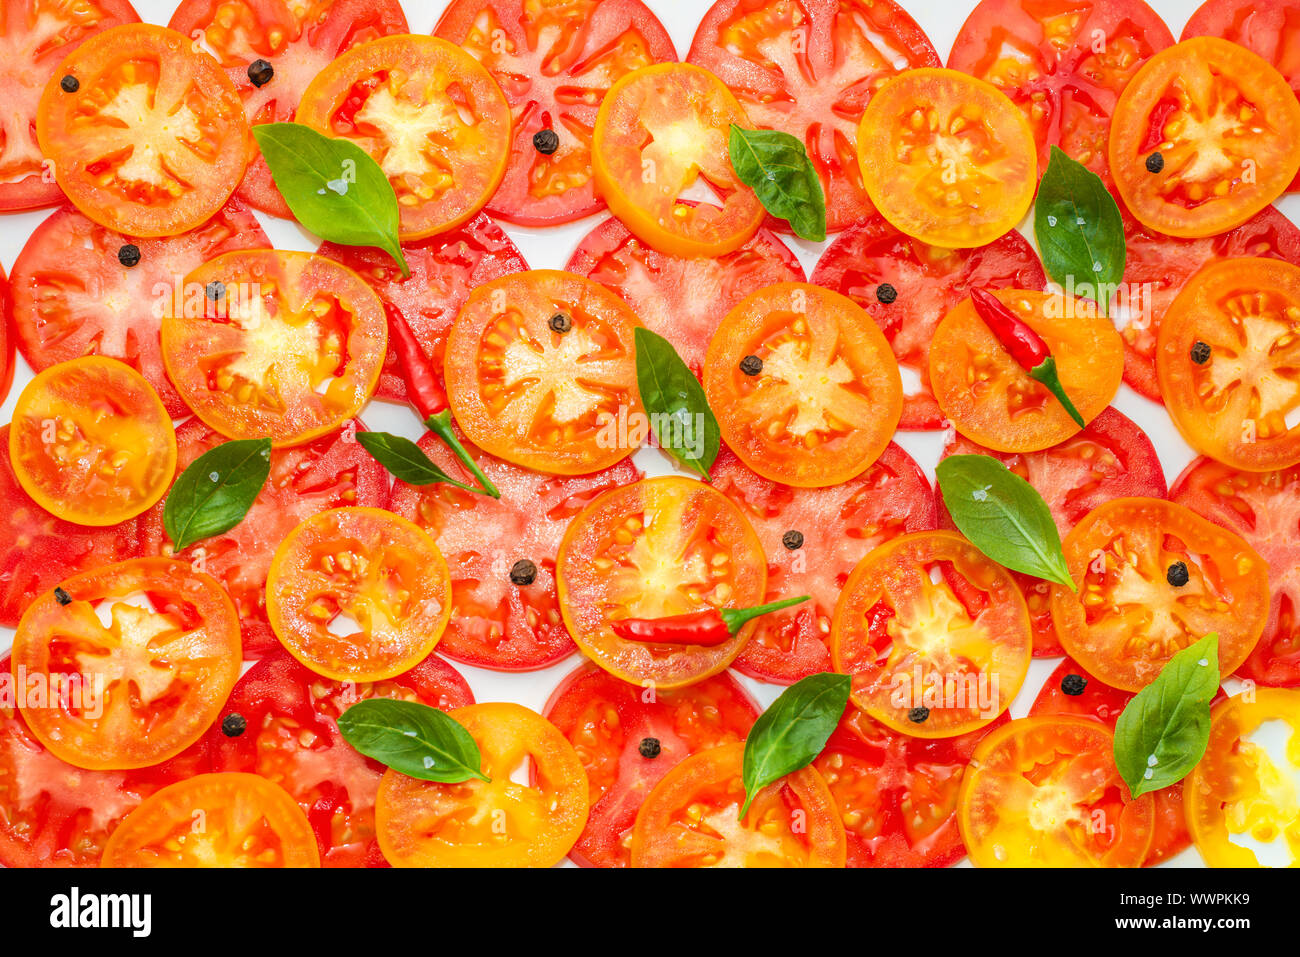 Modèle très tendance de tranches de fruits rouges, jaunes et orange décoré de tomates feuilles de basilic vert et noir, poivrons rouges sur fond blanc, télévision lay Banque D'Images